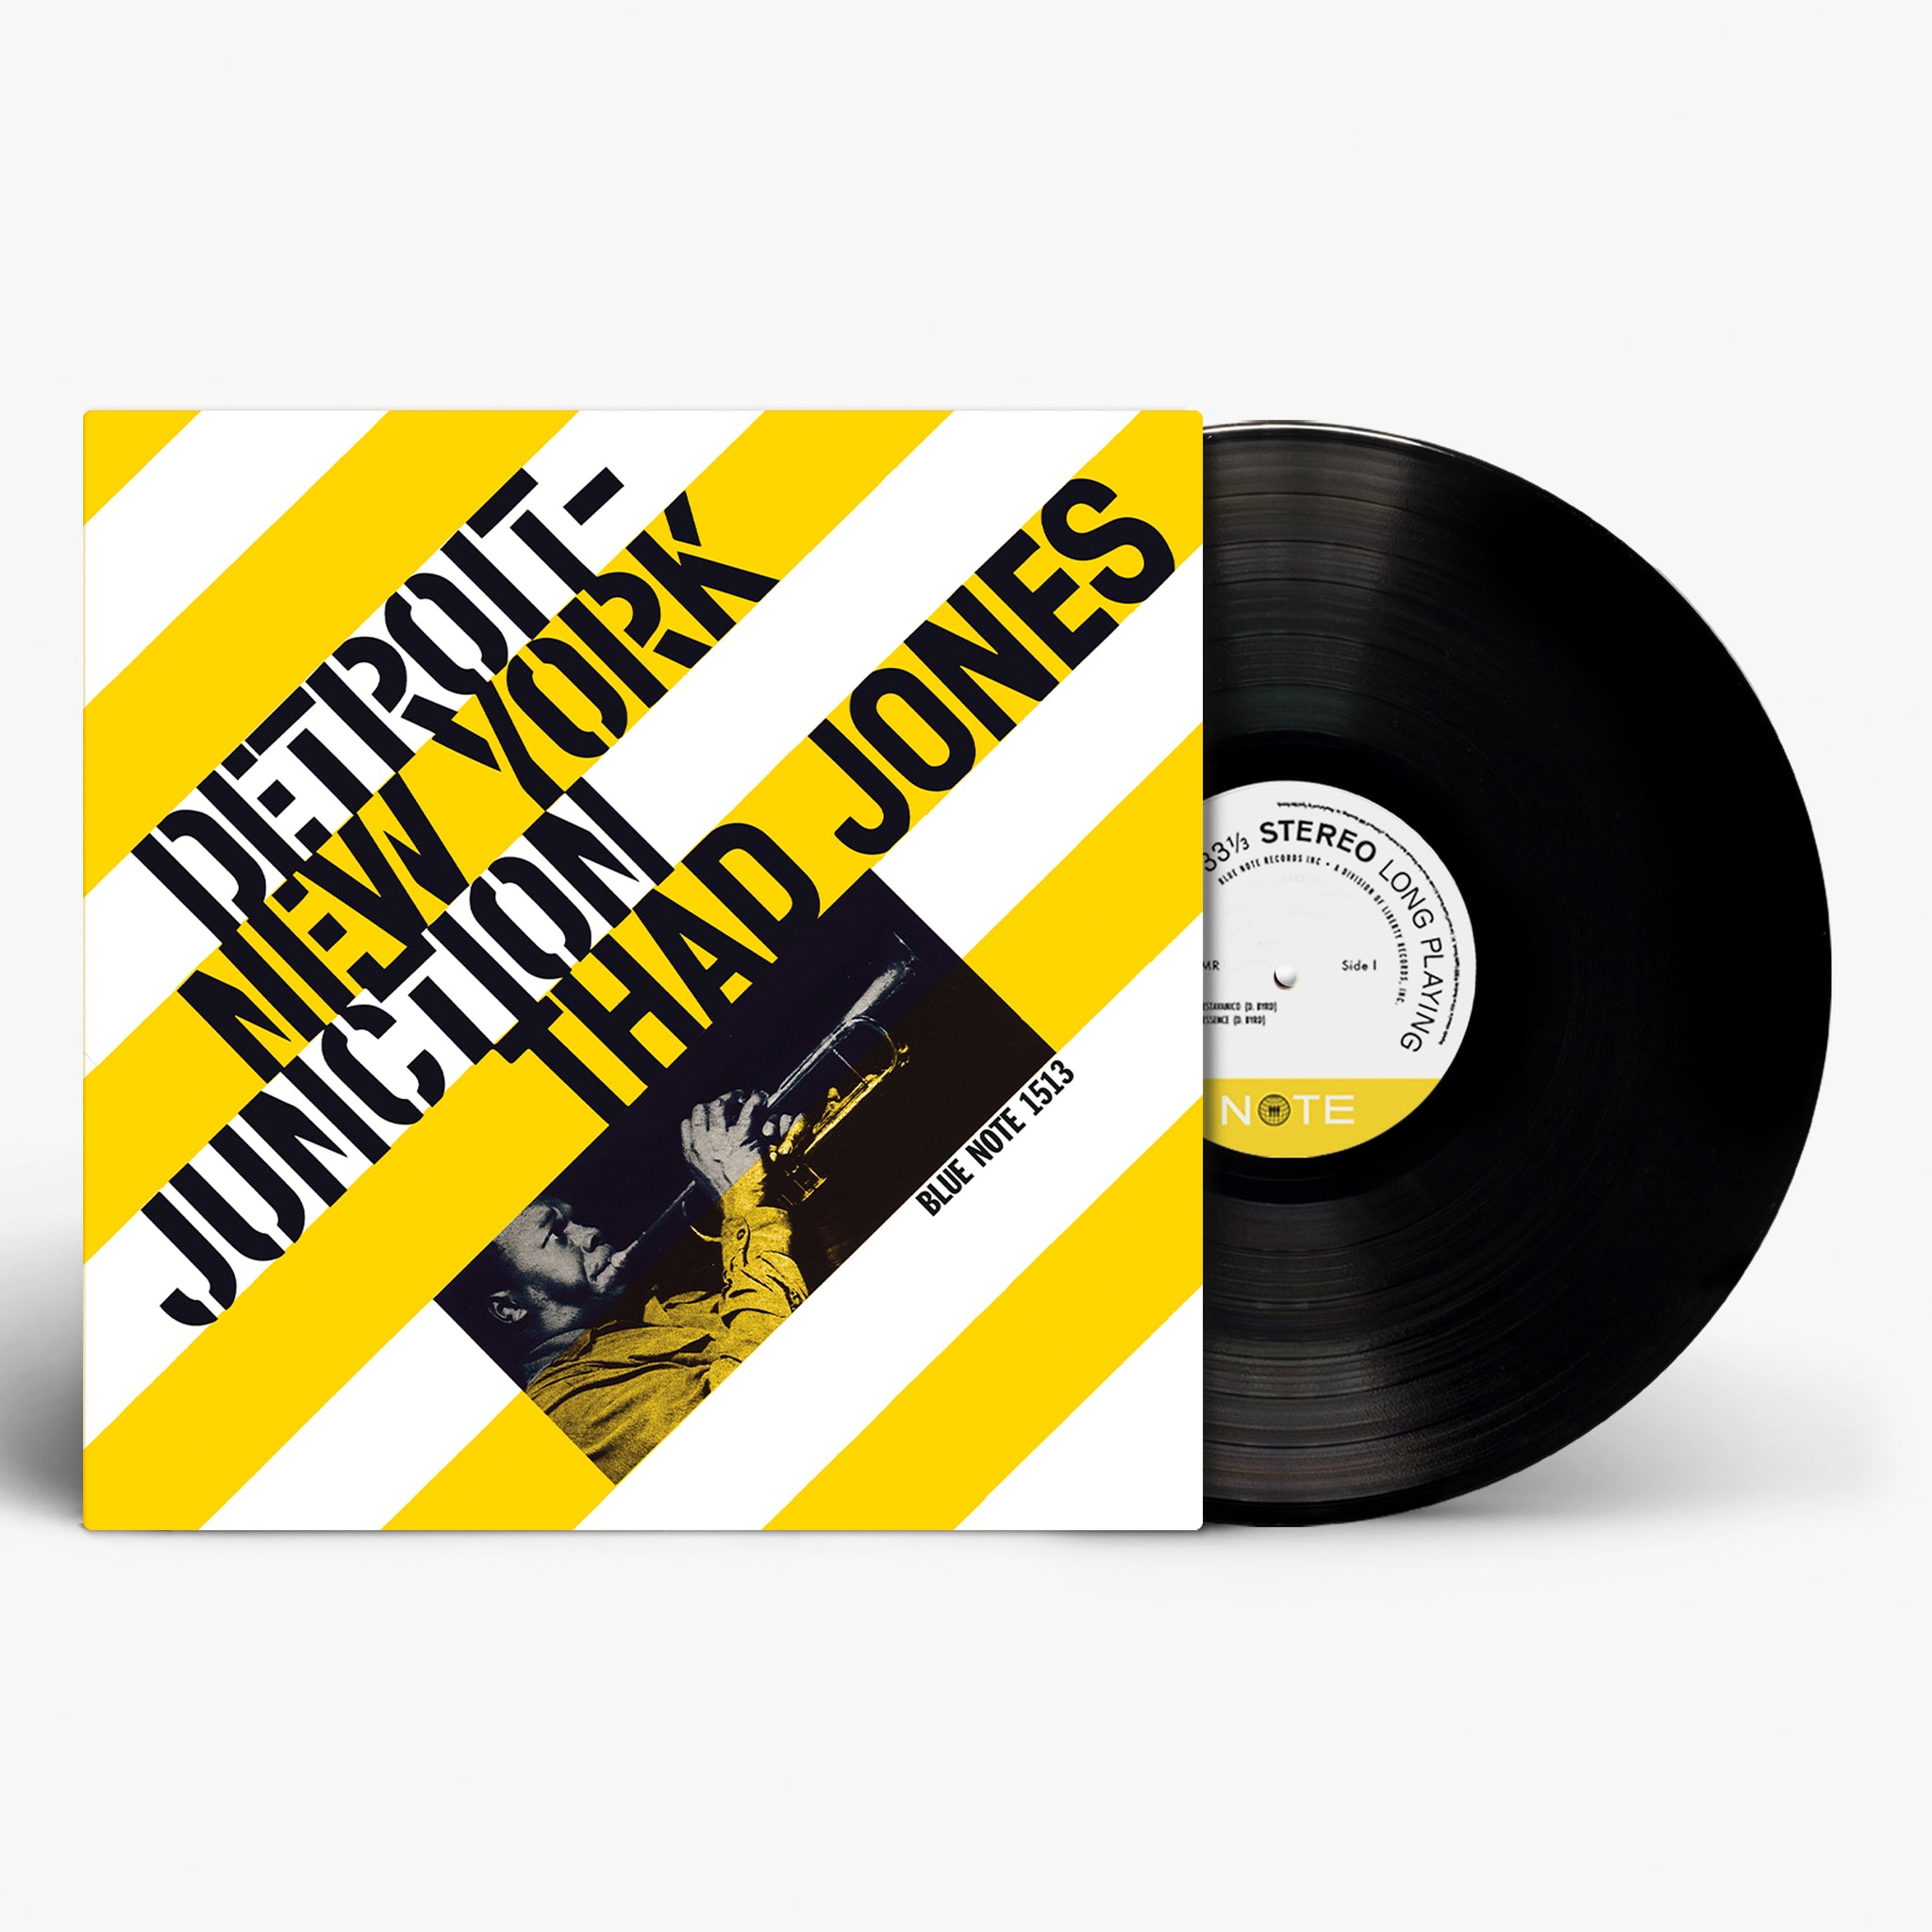 Detroit-New York Junction (Standard Black Vinyl)